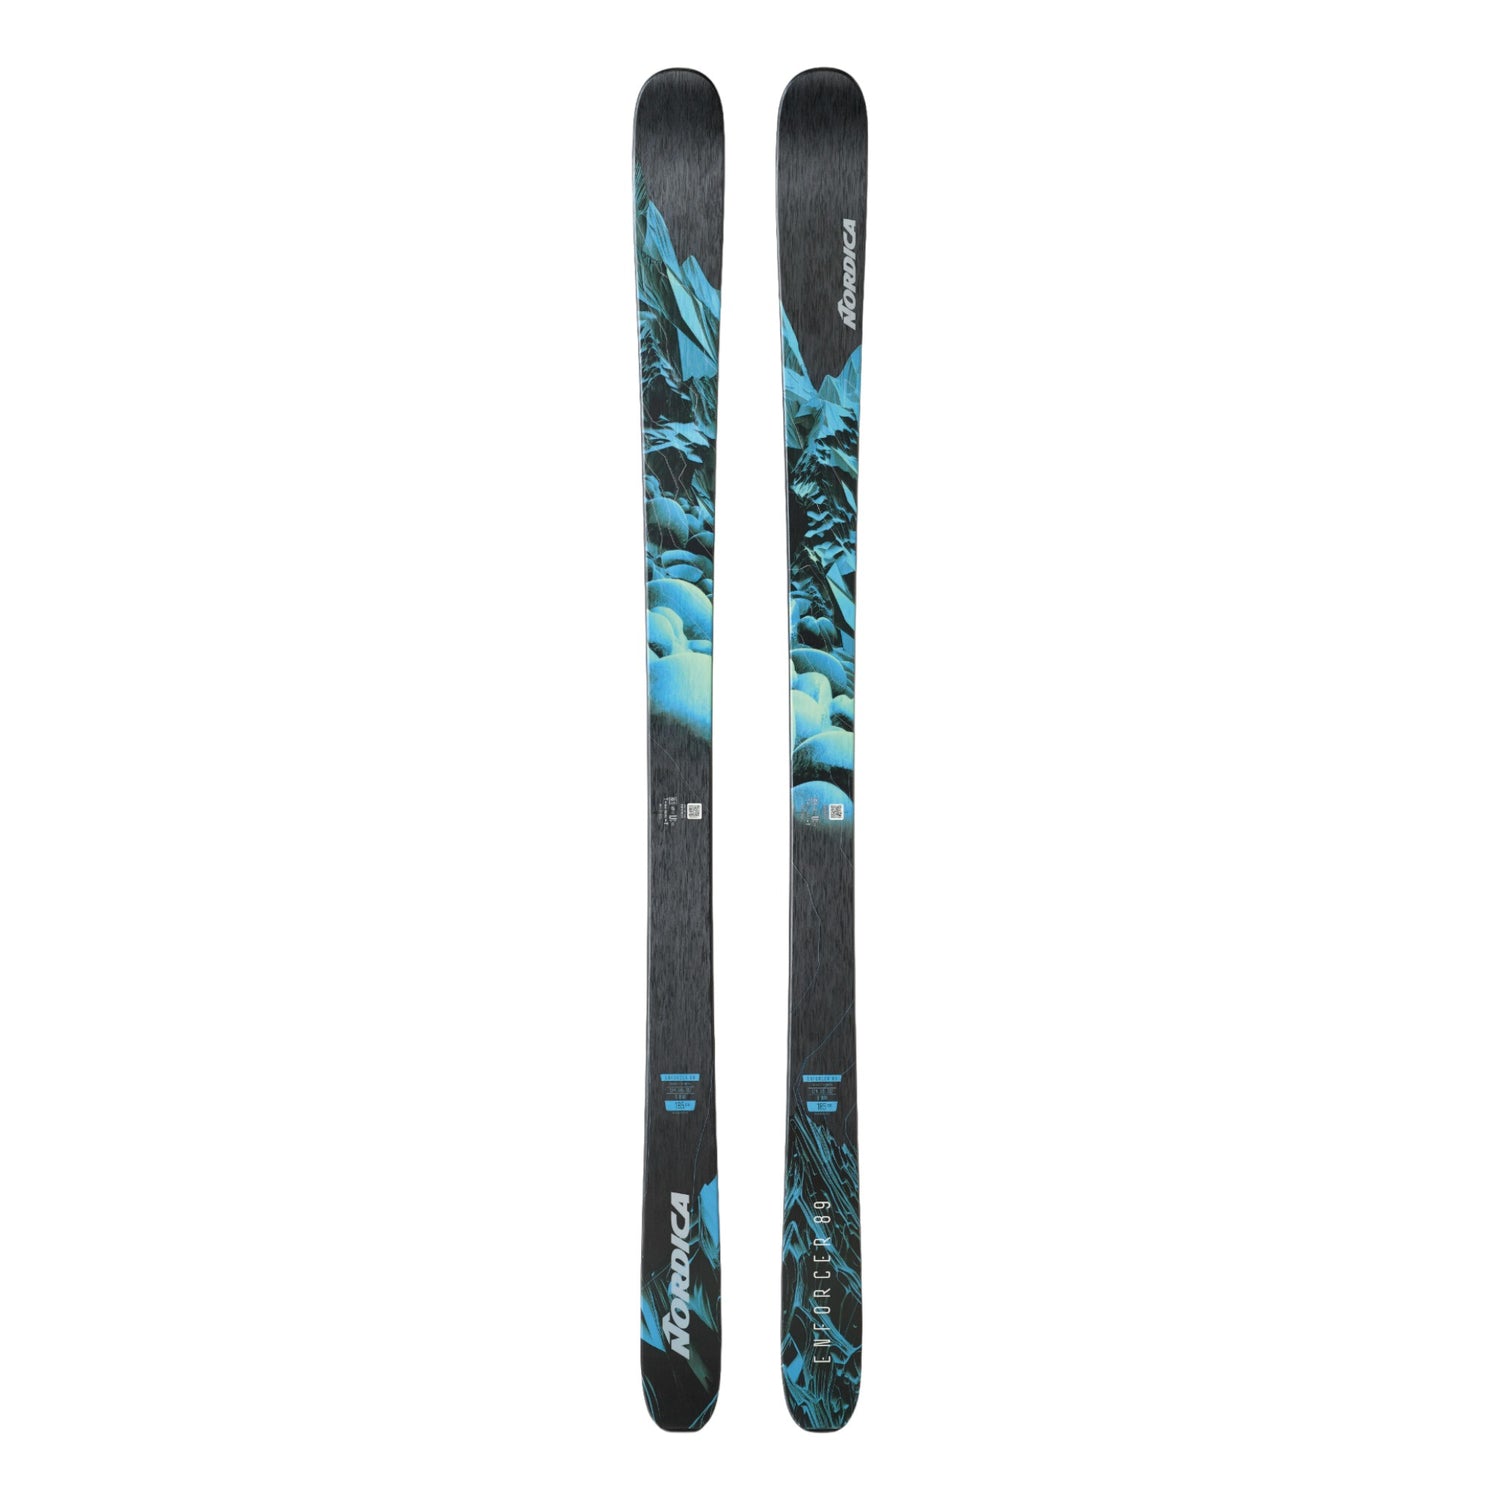 Enforcer 89 Adult Alpine Skis